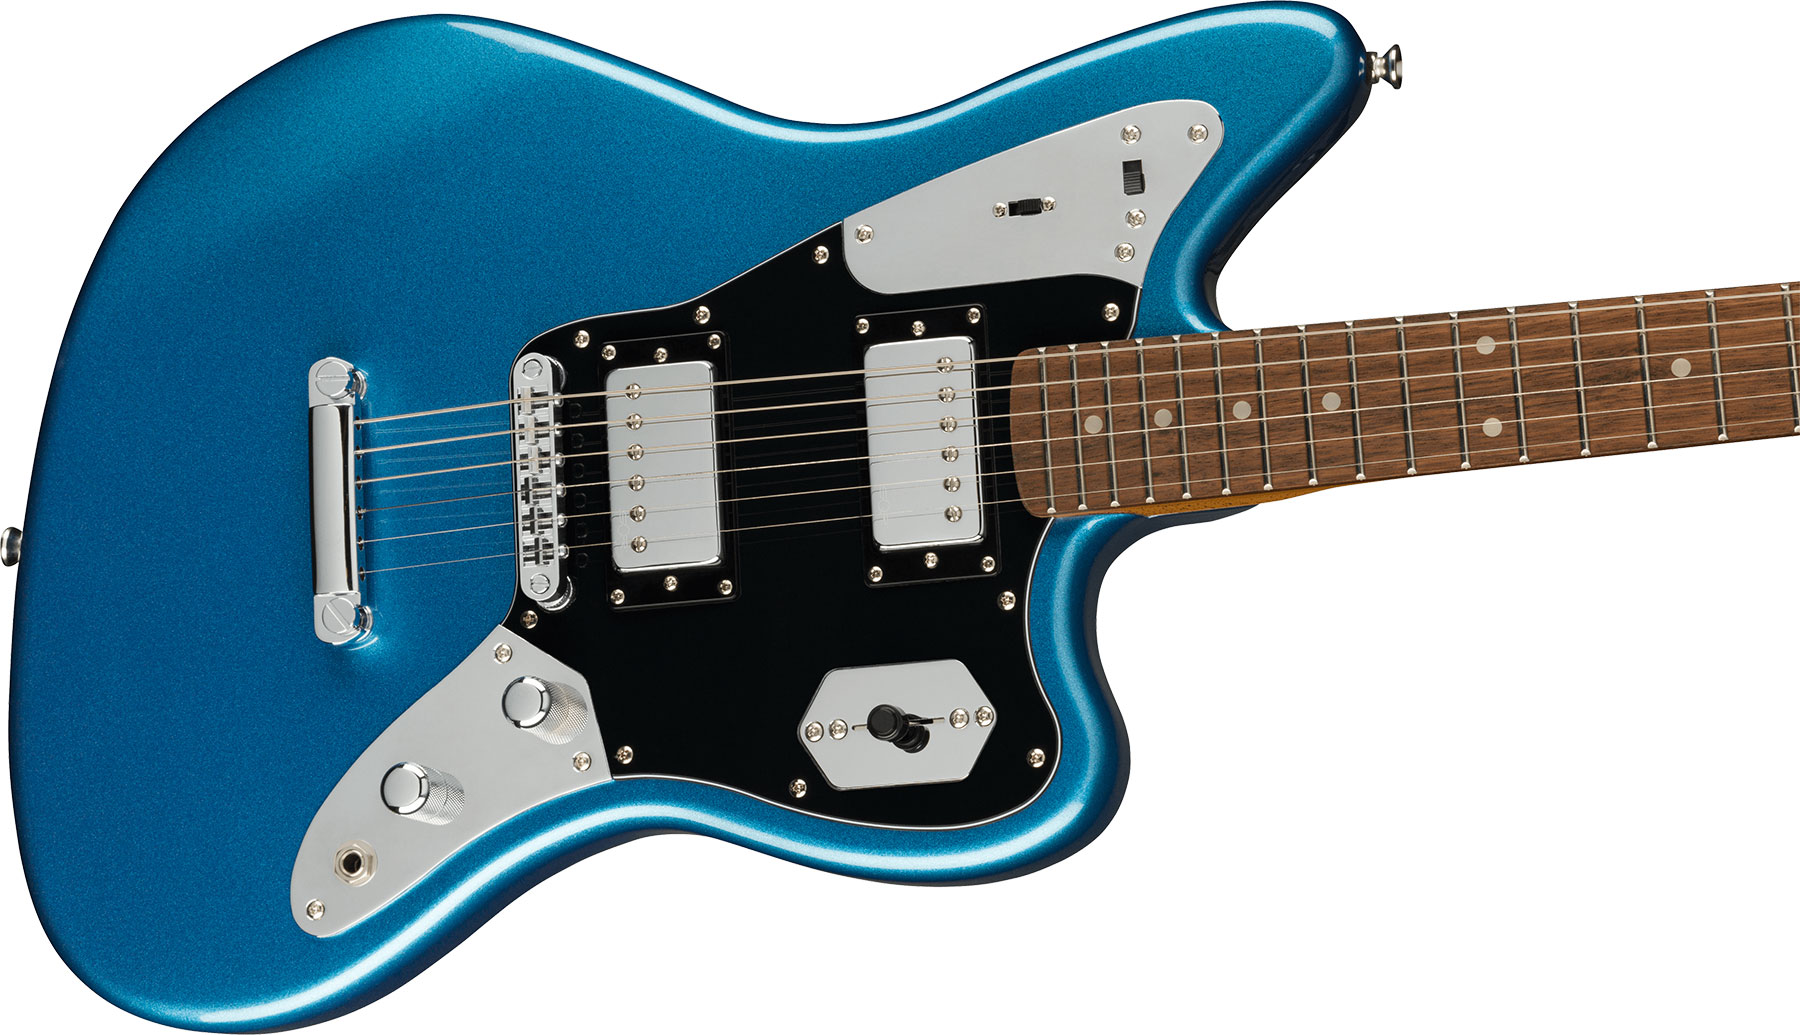 Squier Jaguar Contemporary Hh St Fsr Ltd Ht Lau - Lake Placid Blue - Guitarra electrica retro rock - Variation 2